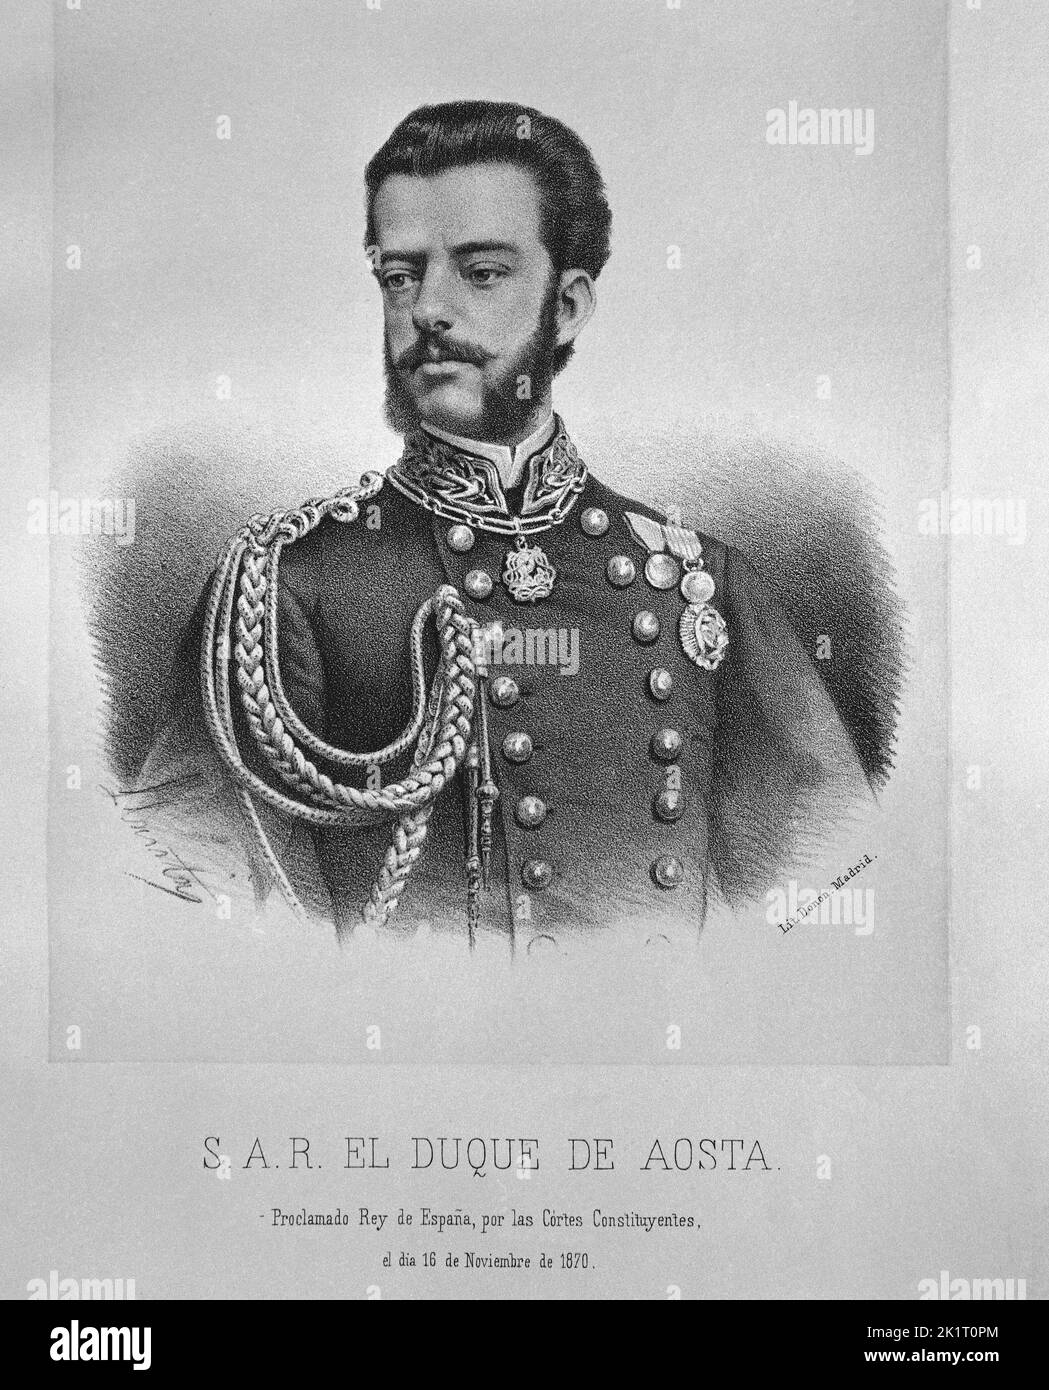 AMADEO I DE SABOYA-1845/1890-DUQUE DE AOSTA-REY DE ESPAÑA POR LAS CORTES CONSTITUYENTES EN 1870. Author: SANTIAGO LLANTA Y GUERIN-LITOGRAFO-. Stock Photo